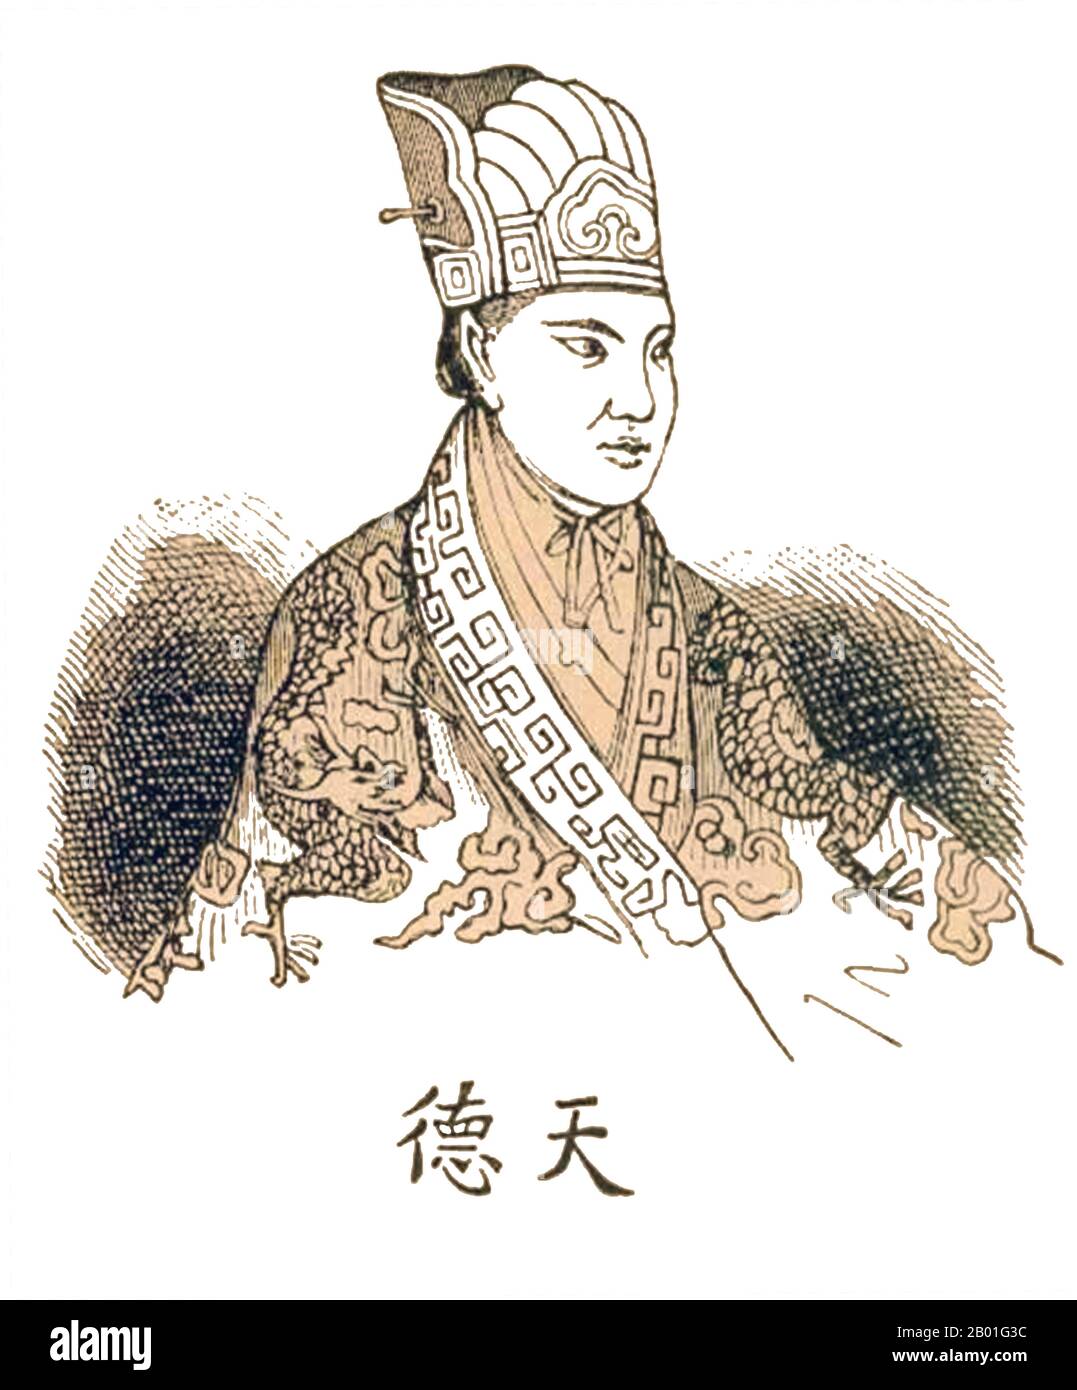 China: Hong Xiuquan (1. Januar 1814 - 1. Juni 1864), Führer und "Himmlischer König" des selbsternannten himmlischen Königreichs Taiping, besser bekannt als Taiping Rebellion (1850-1864). Gravur, 1853. Die chinesischen Schriftzeichen unter seinem Bild lauten „Tian De“ oder „himmlische Tugend“. Hong Xiuquan, geboren in Hong Renkun und Stilname Huoxiu, war ein Hakka-Chinese, der den Taiping-Aufstand gegen die Qing-Dynastie anführte und das himmlische Königreich Taiping über verschiedenen Teilen Südchina errichtete, mit sich selbst als „himmlischer König“ und selbsternannter Bruder von Jesus Christus. Stockfoto